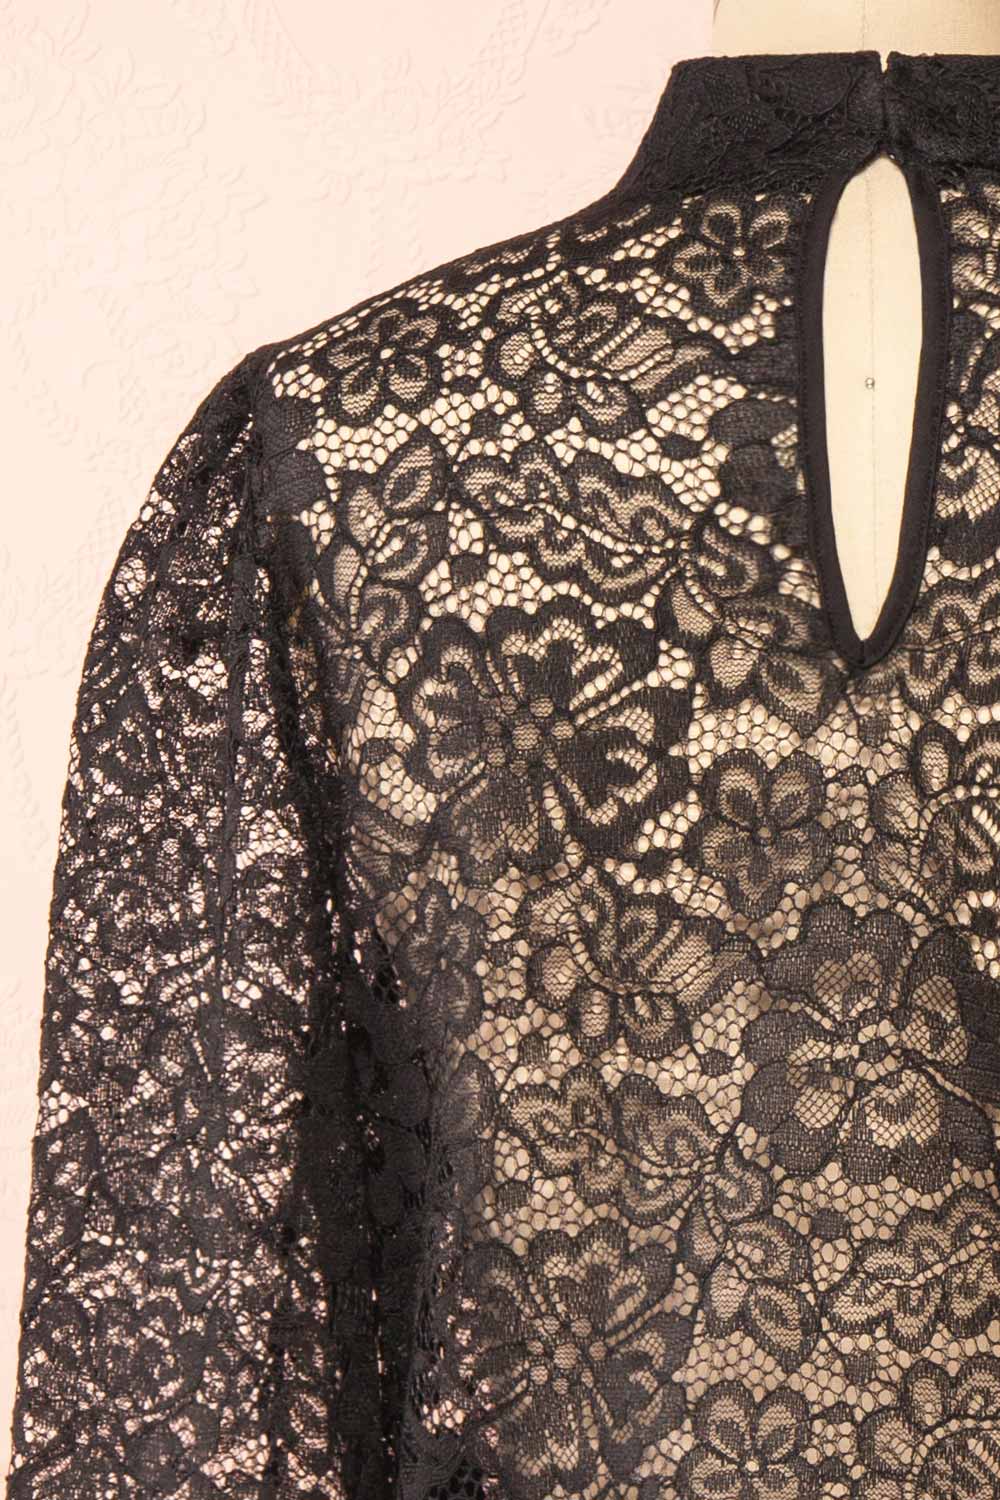 Dahana Black Floral Lace Blouse | Boutique 1861 back close-up